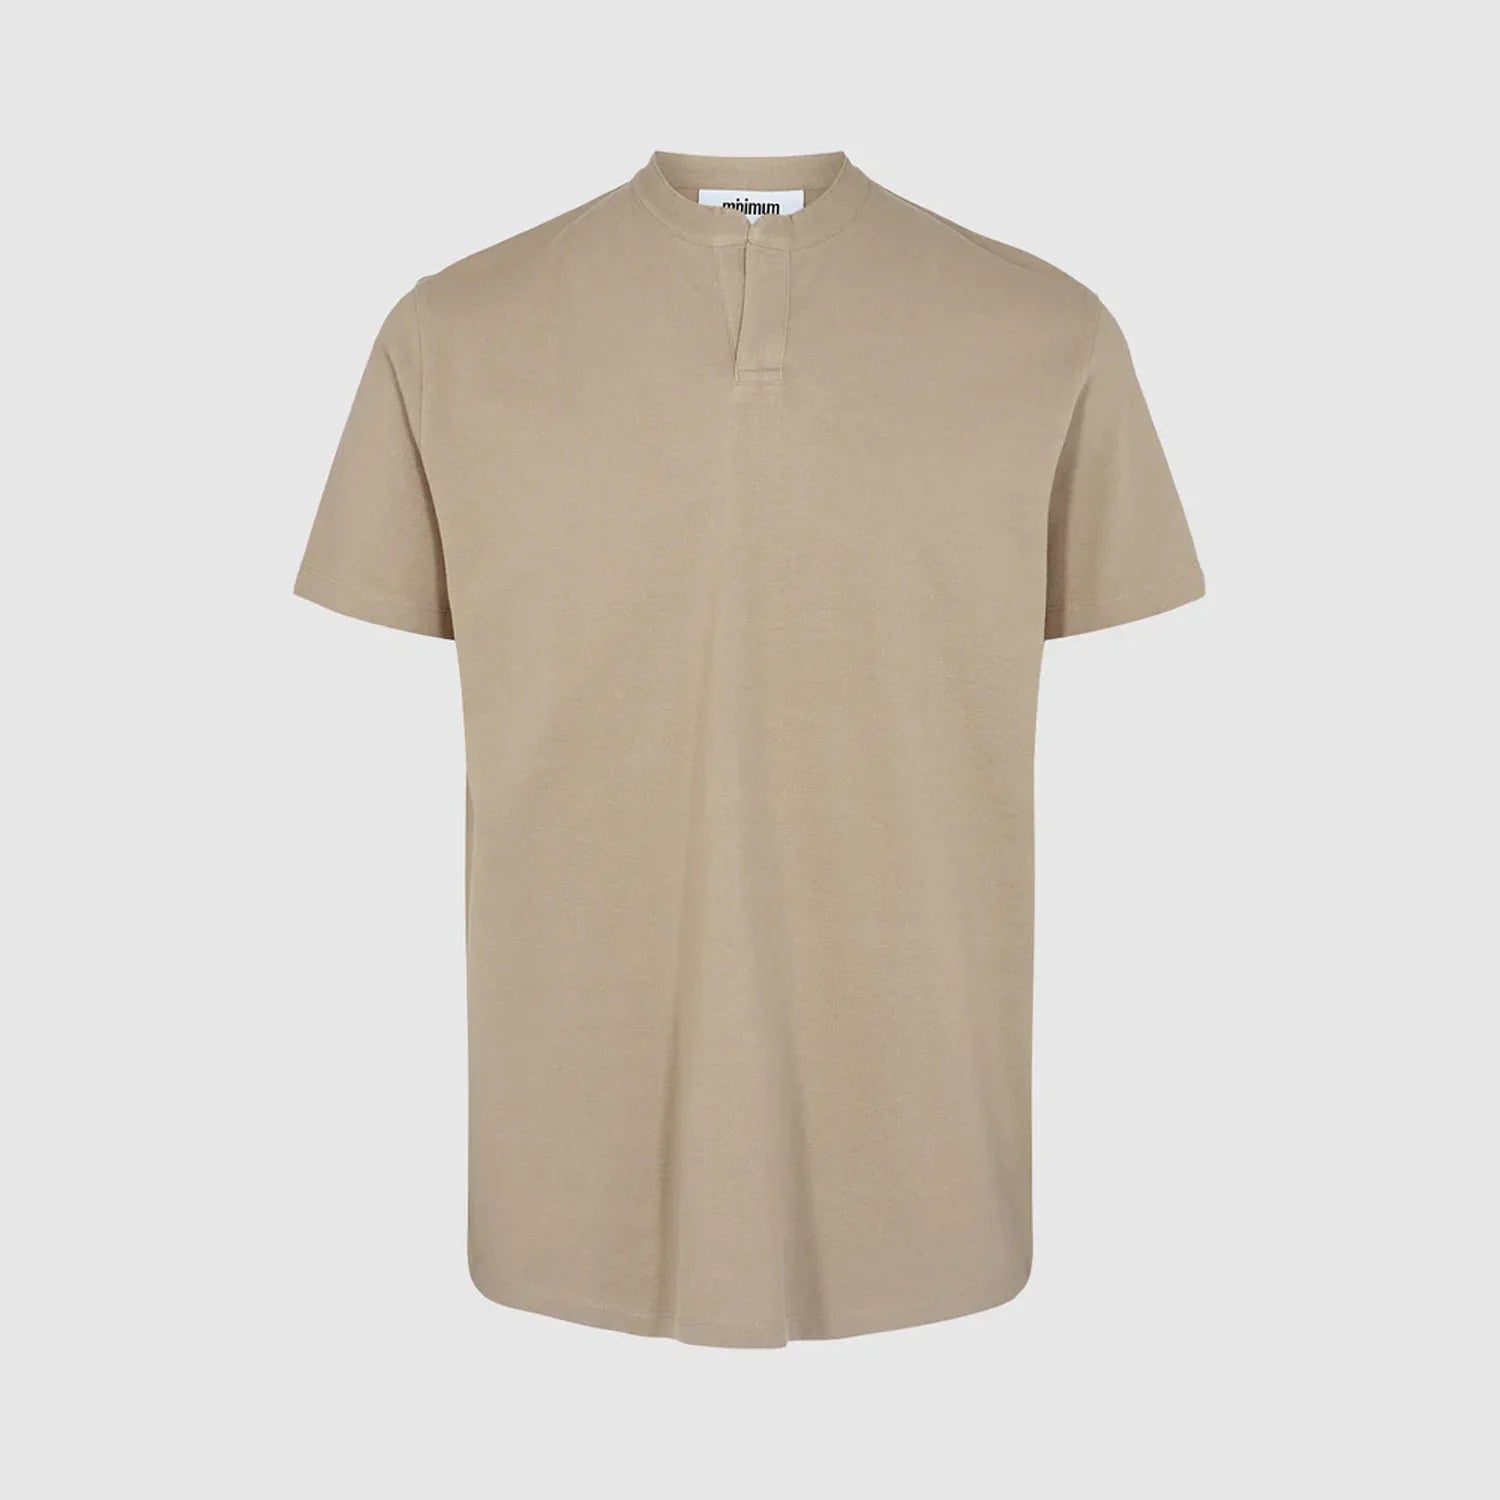 'MINIMUM Temms 2088 Polo Shirt' in 'Greige' colour